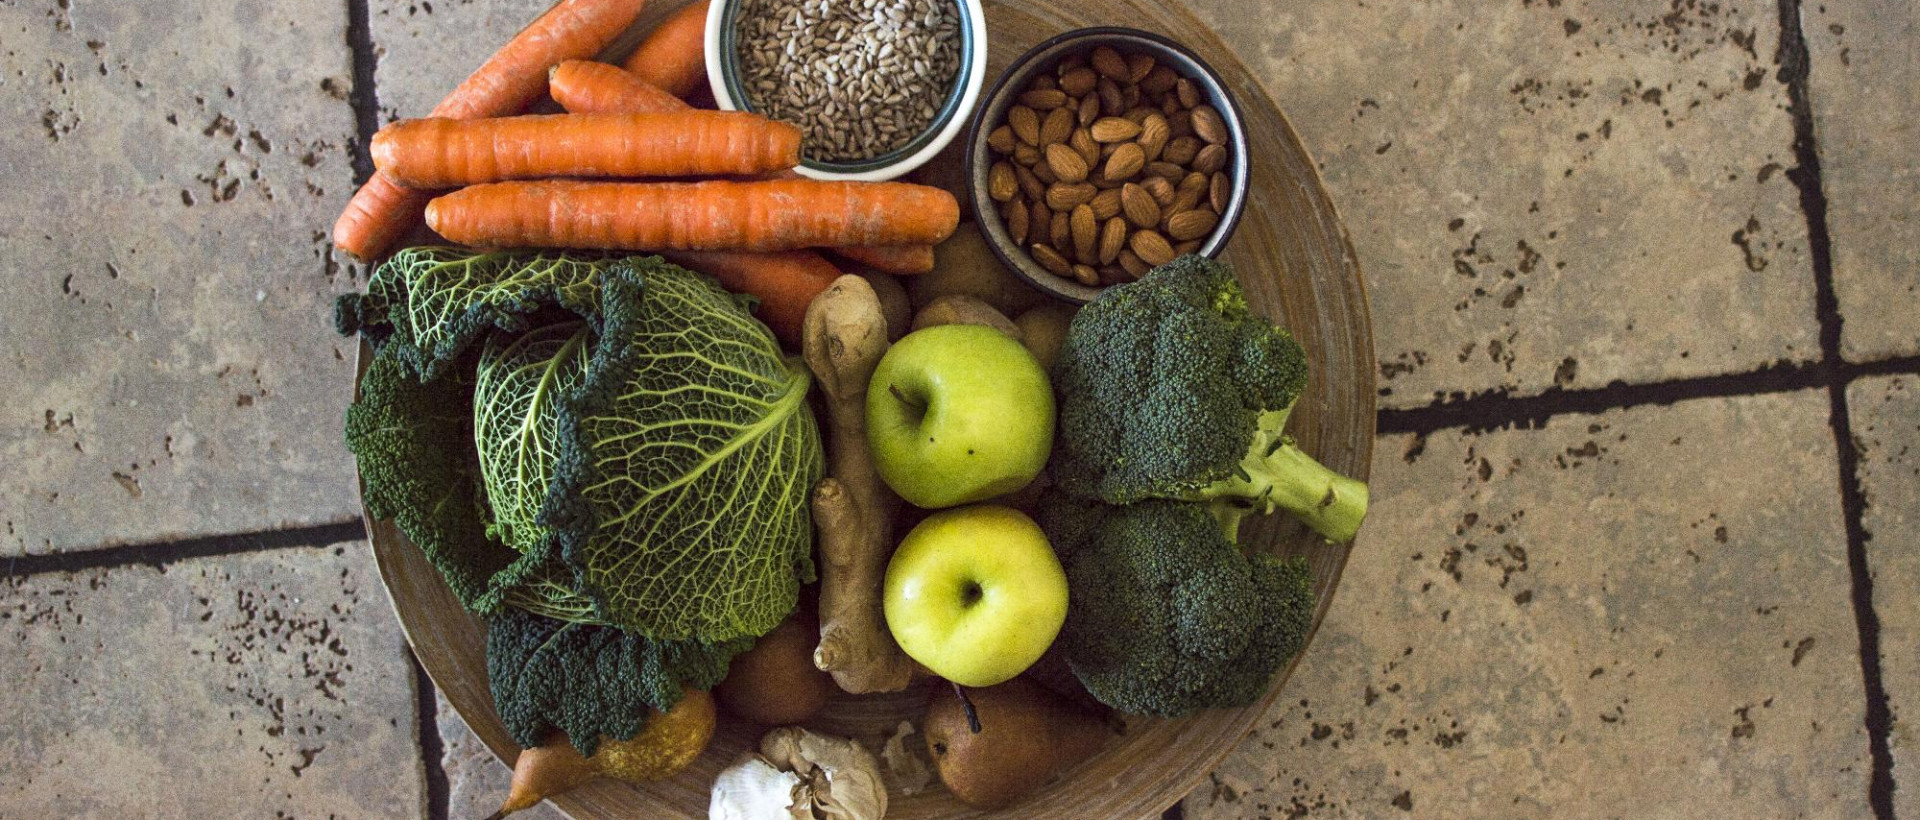 Első emberkísérletünk: vegán étrend 100 napig